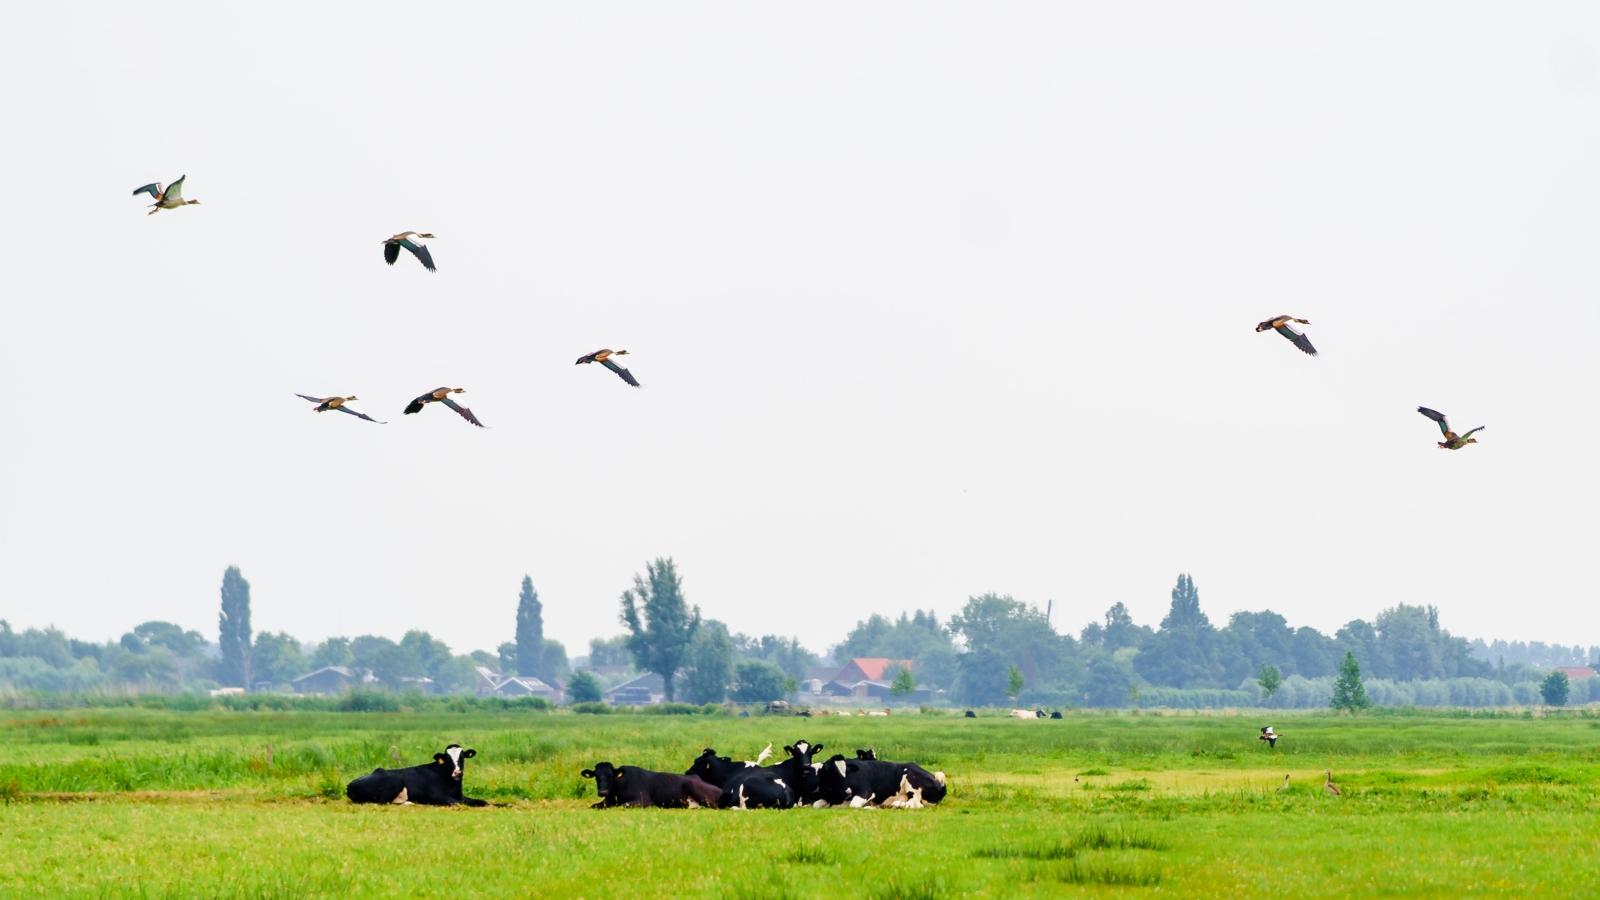 Een groepje koeien ligt in een weiland, op de achtergrond bomen en een dorpje, vogels vliegen over de koeien heen